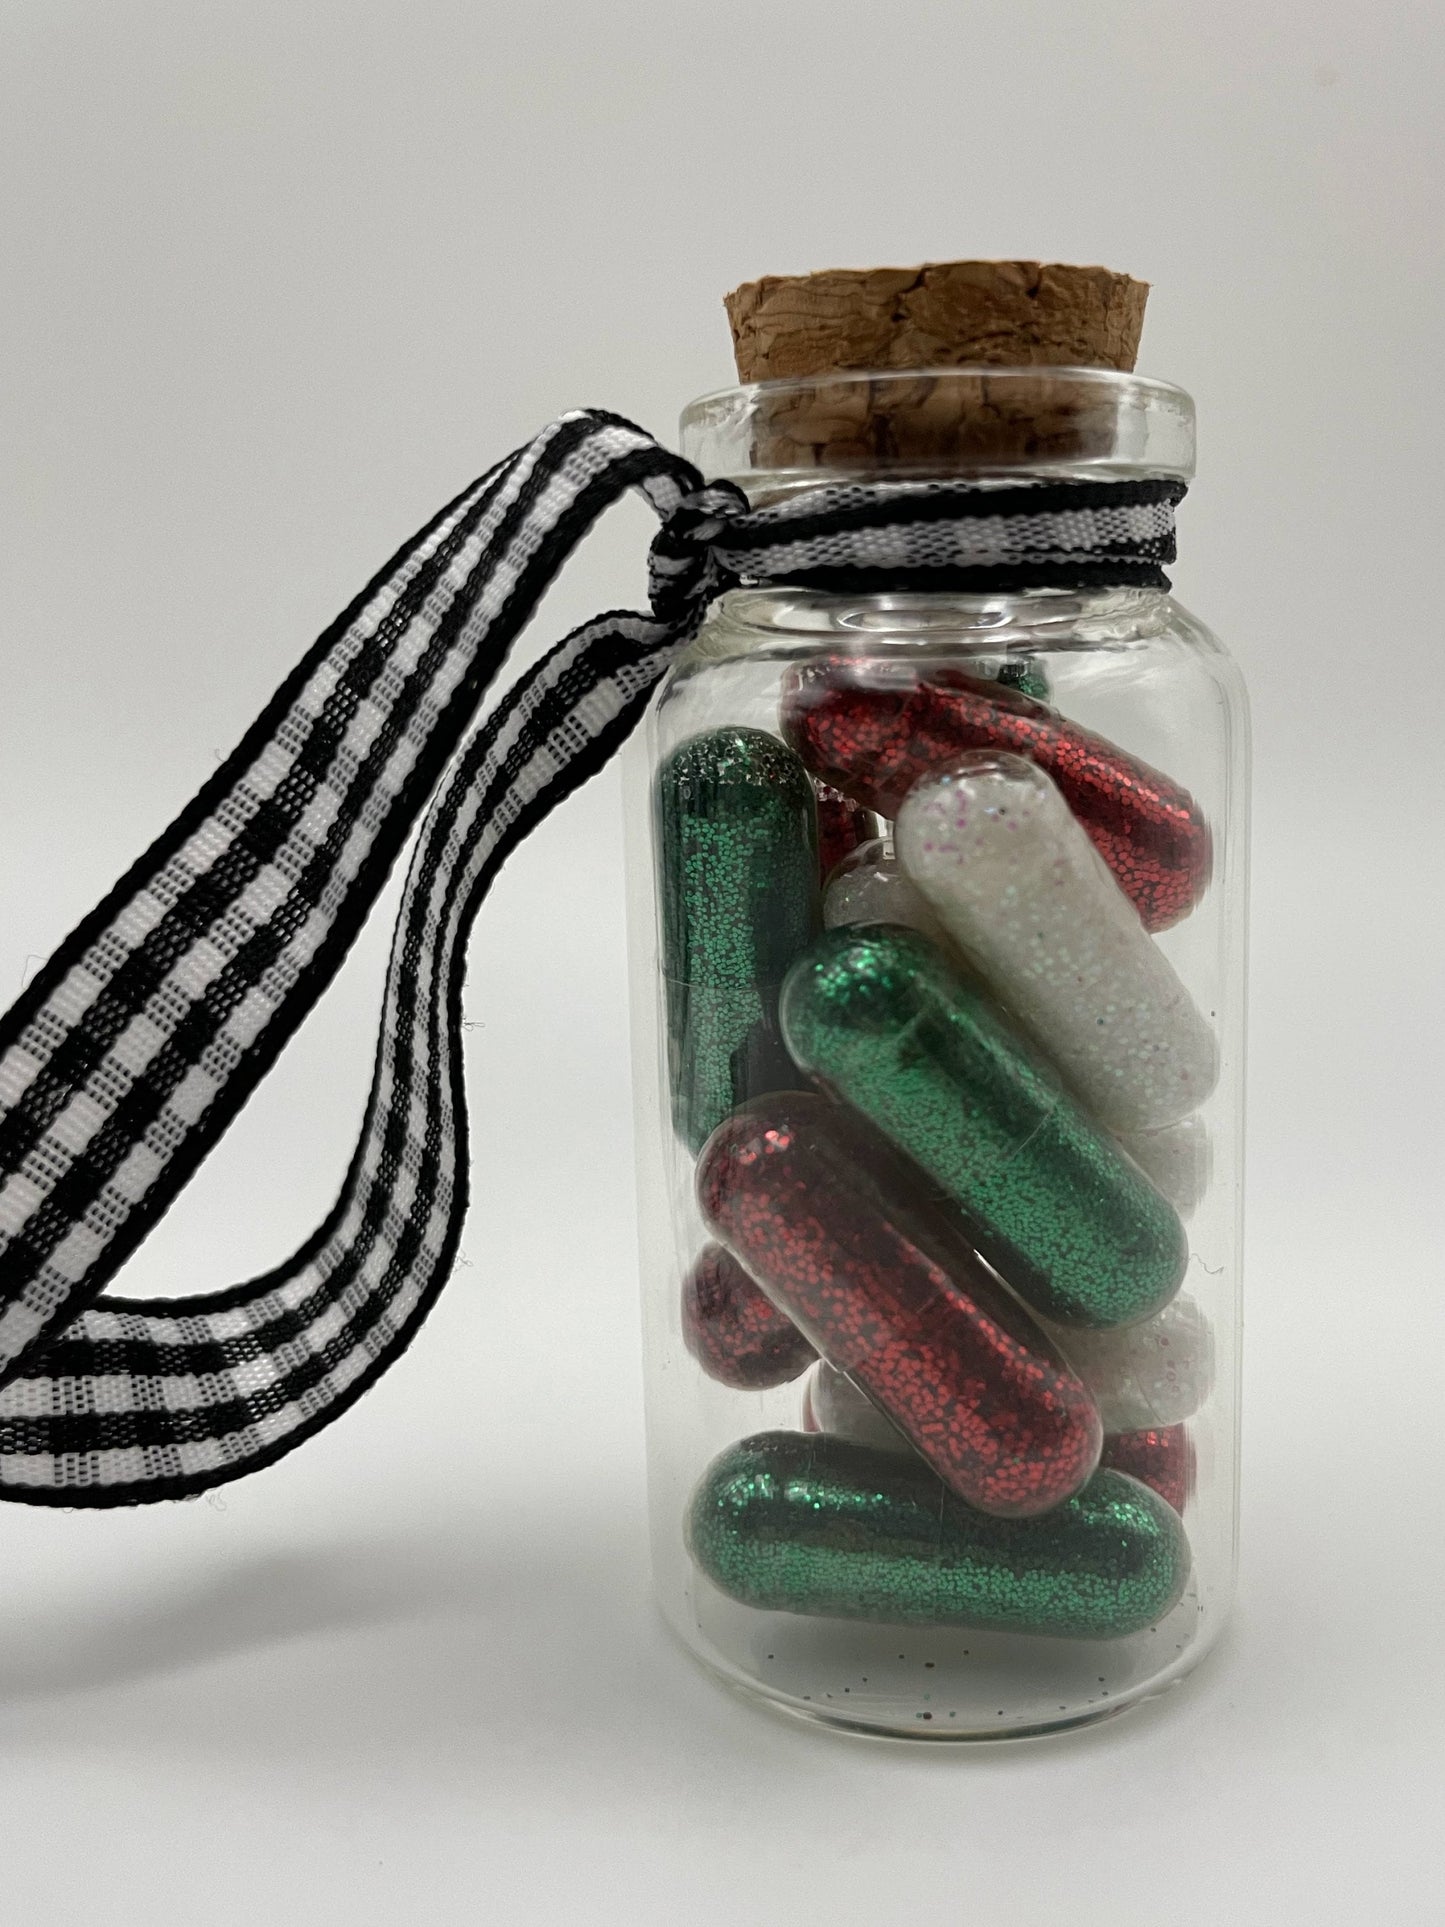 Glitter medicine capsule ornament